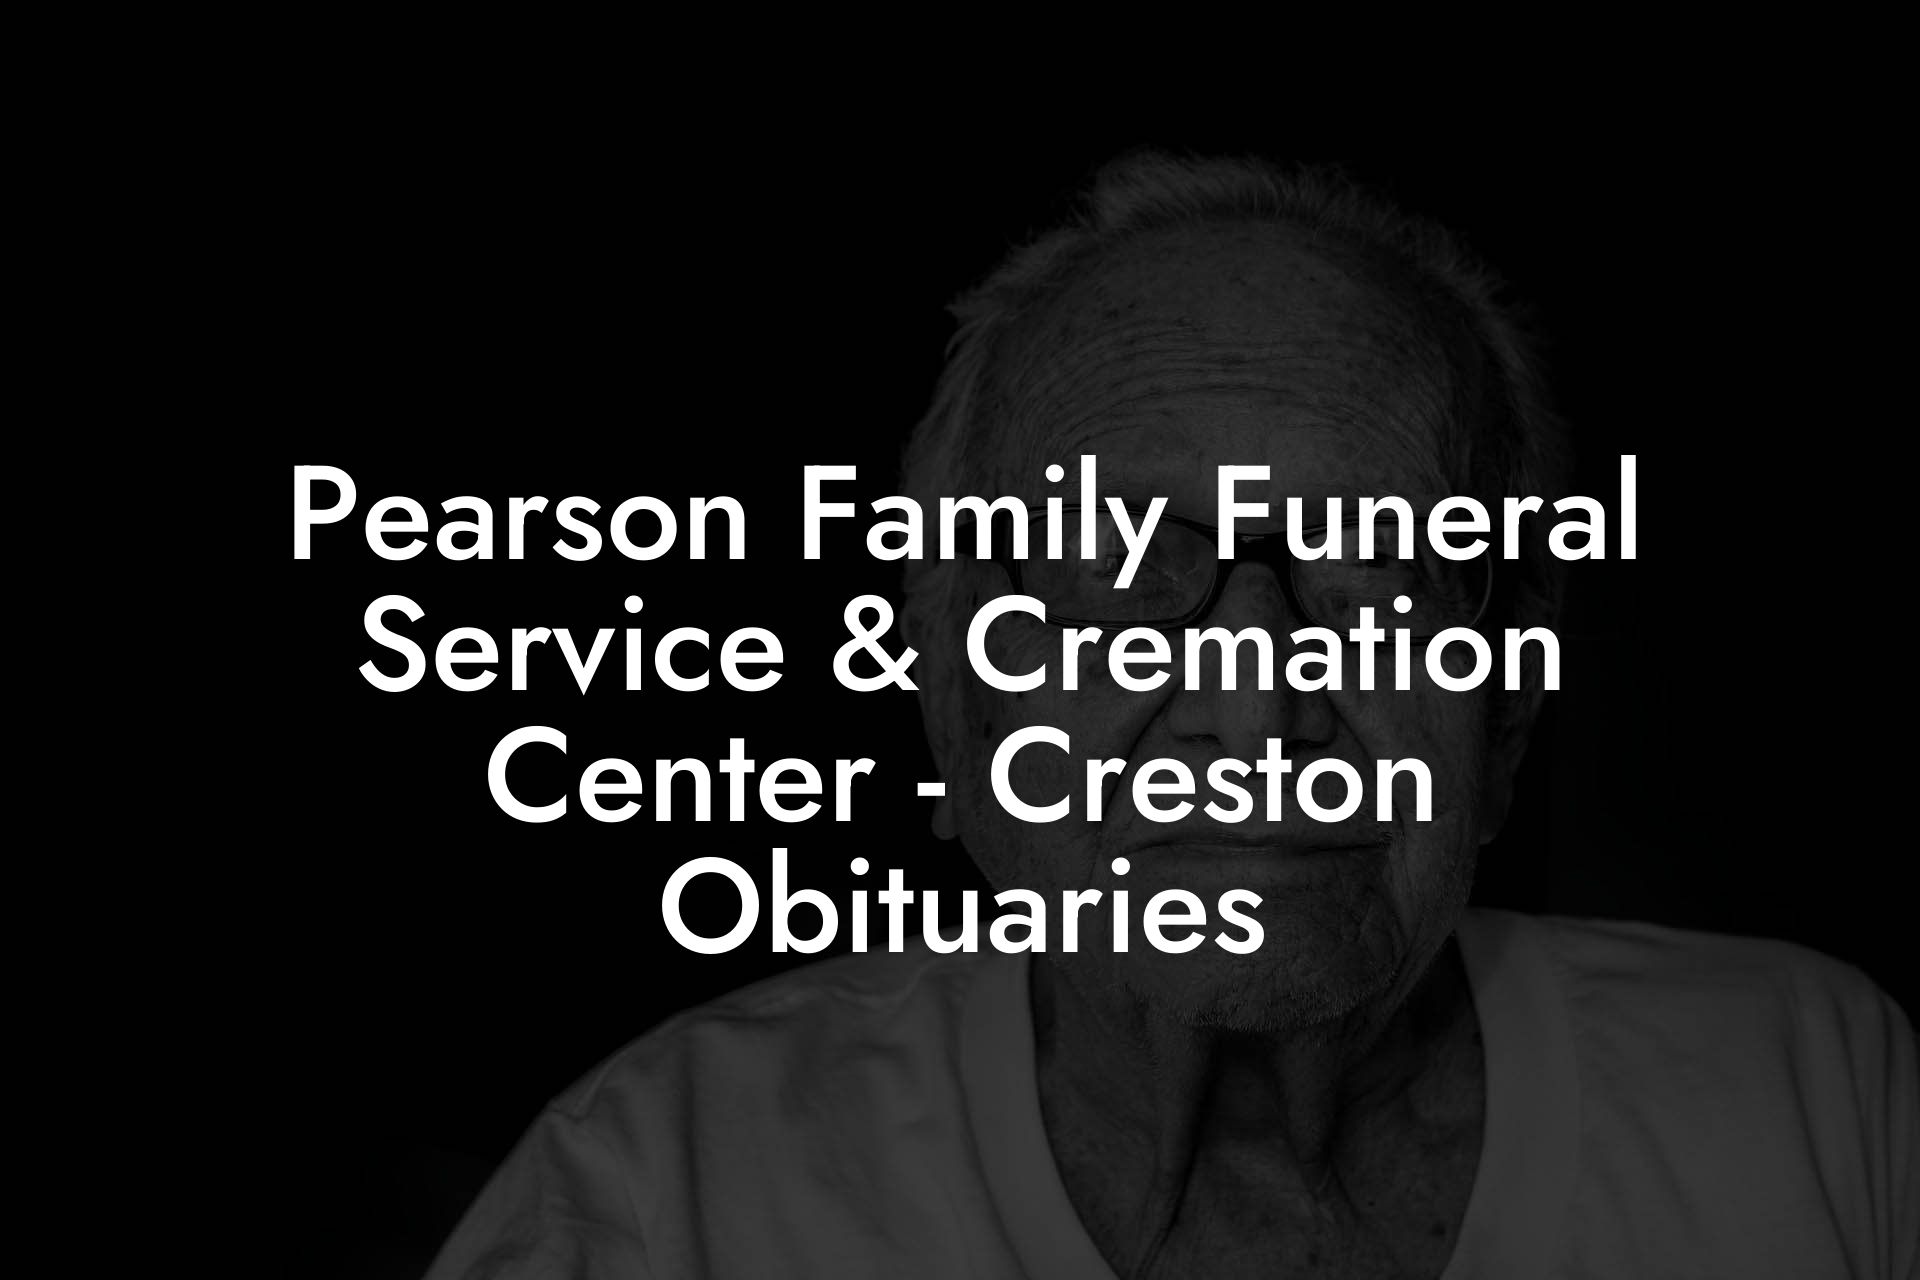 Pearson Family Funeral Service & Cremation Center - Creston Obituaries